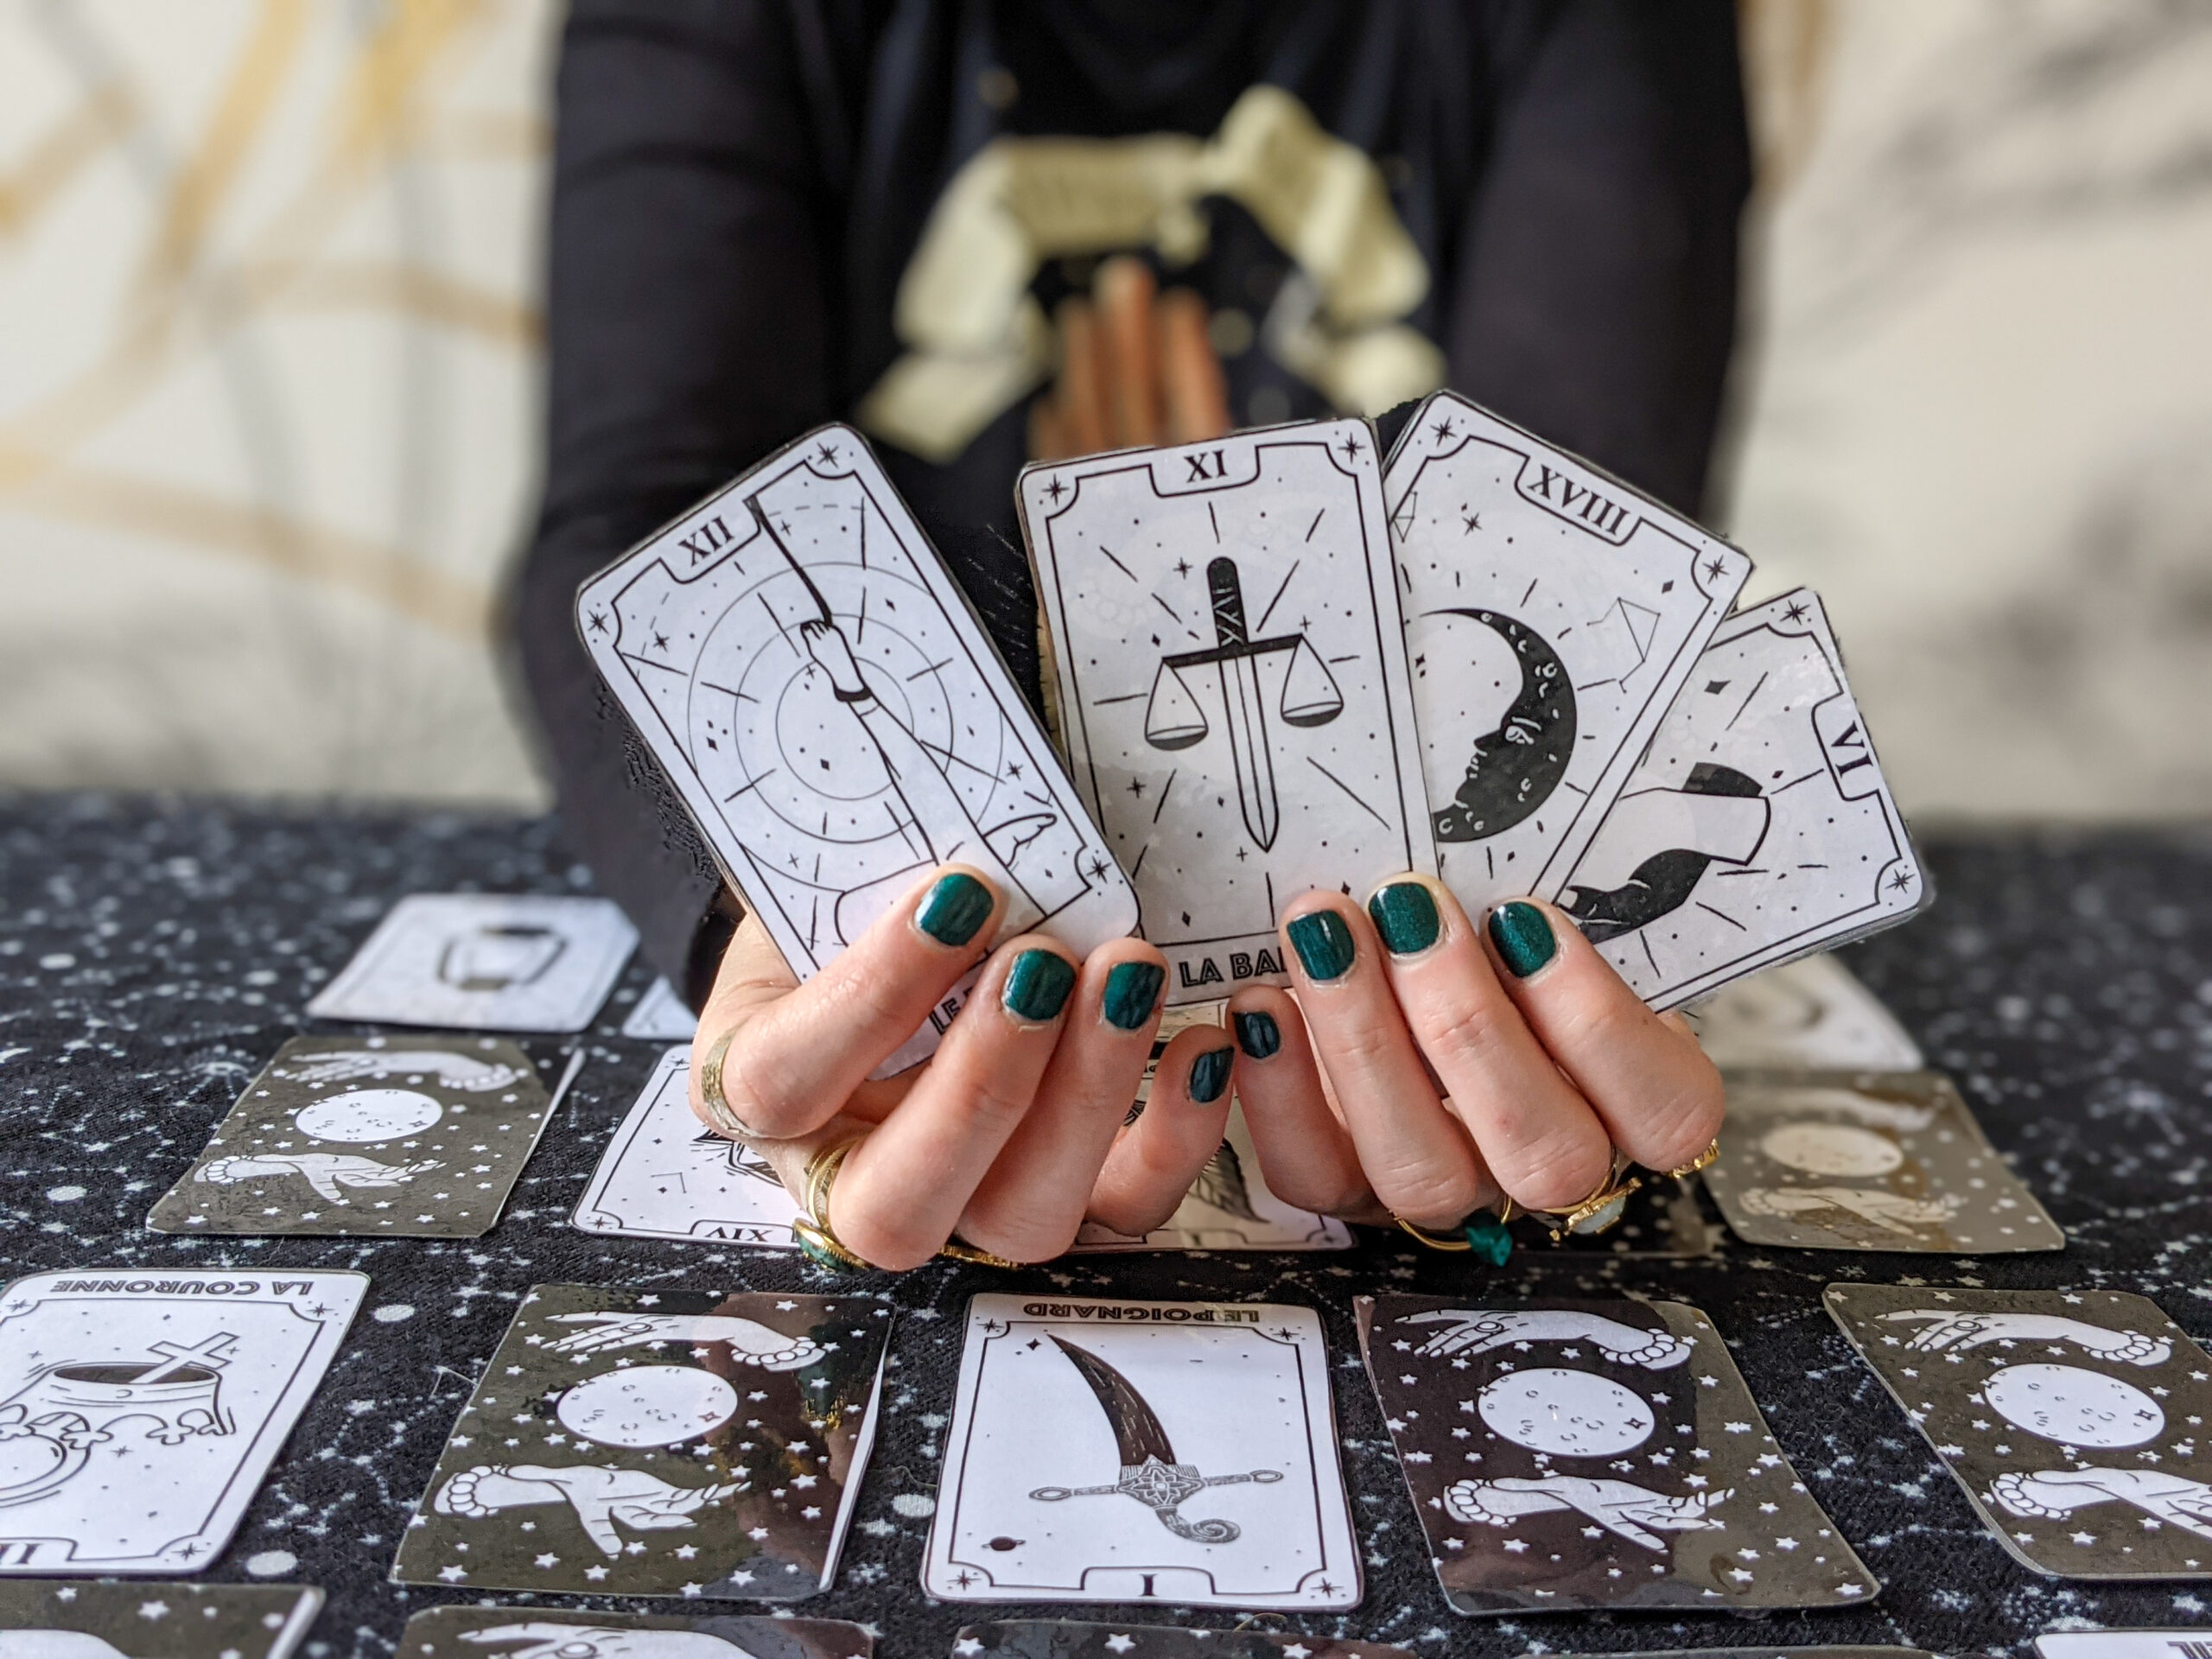 jeu de tarot Ã  dÃ©couper la bande Ã  baudelaire divination conjugaison cartomancie cours de franÃ§ais